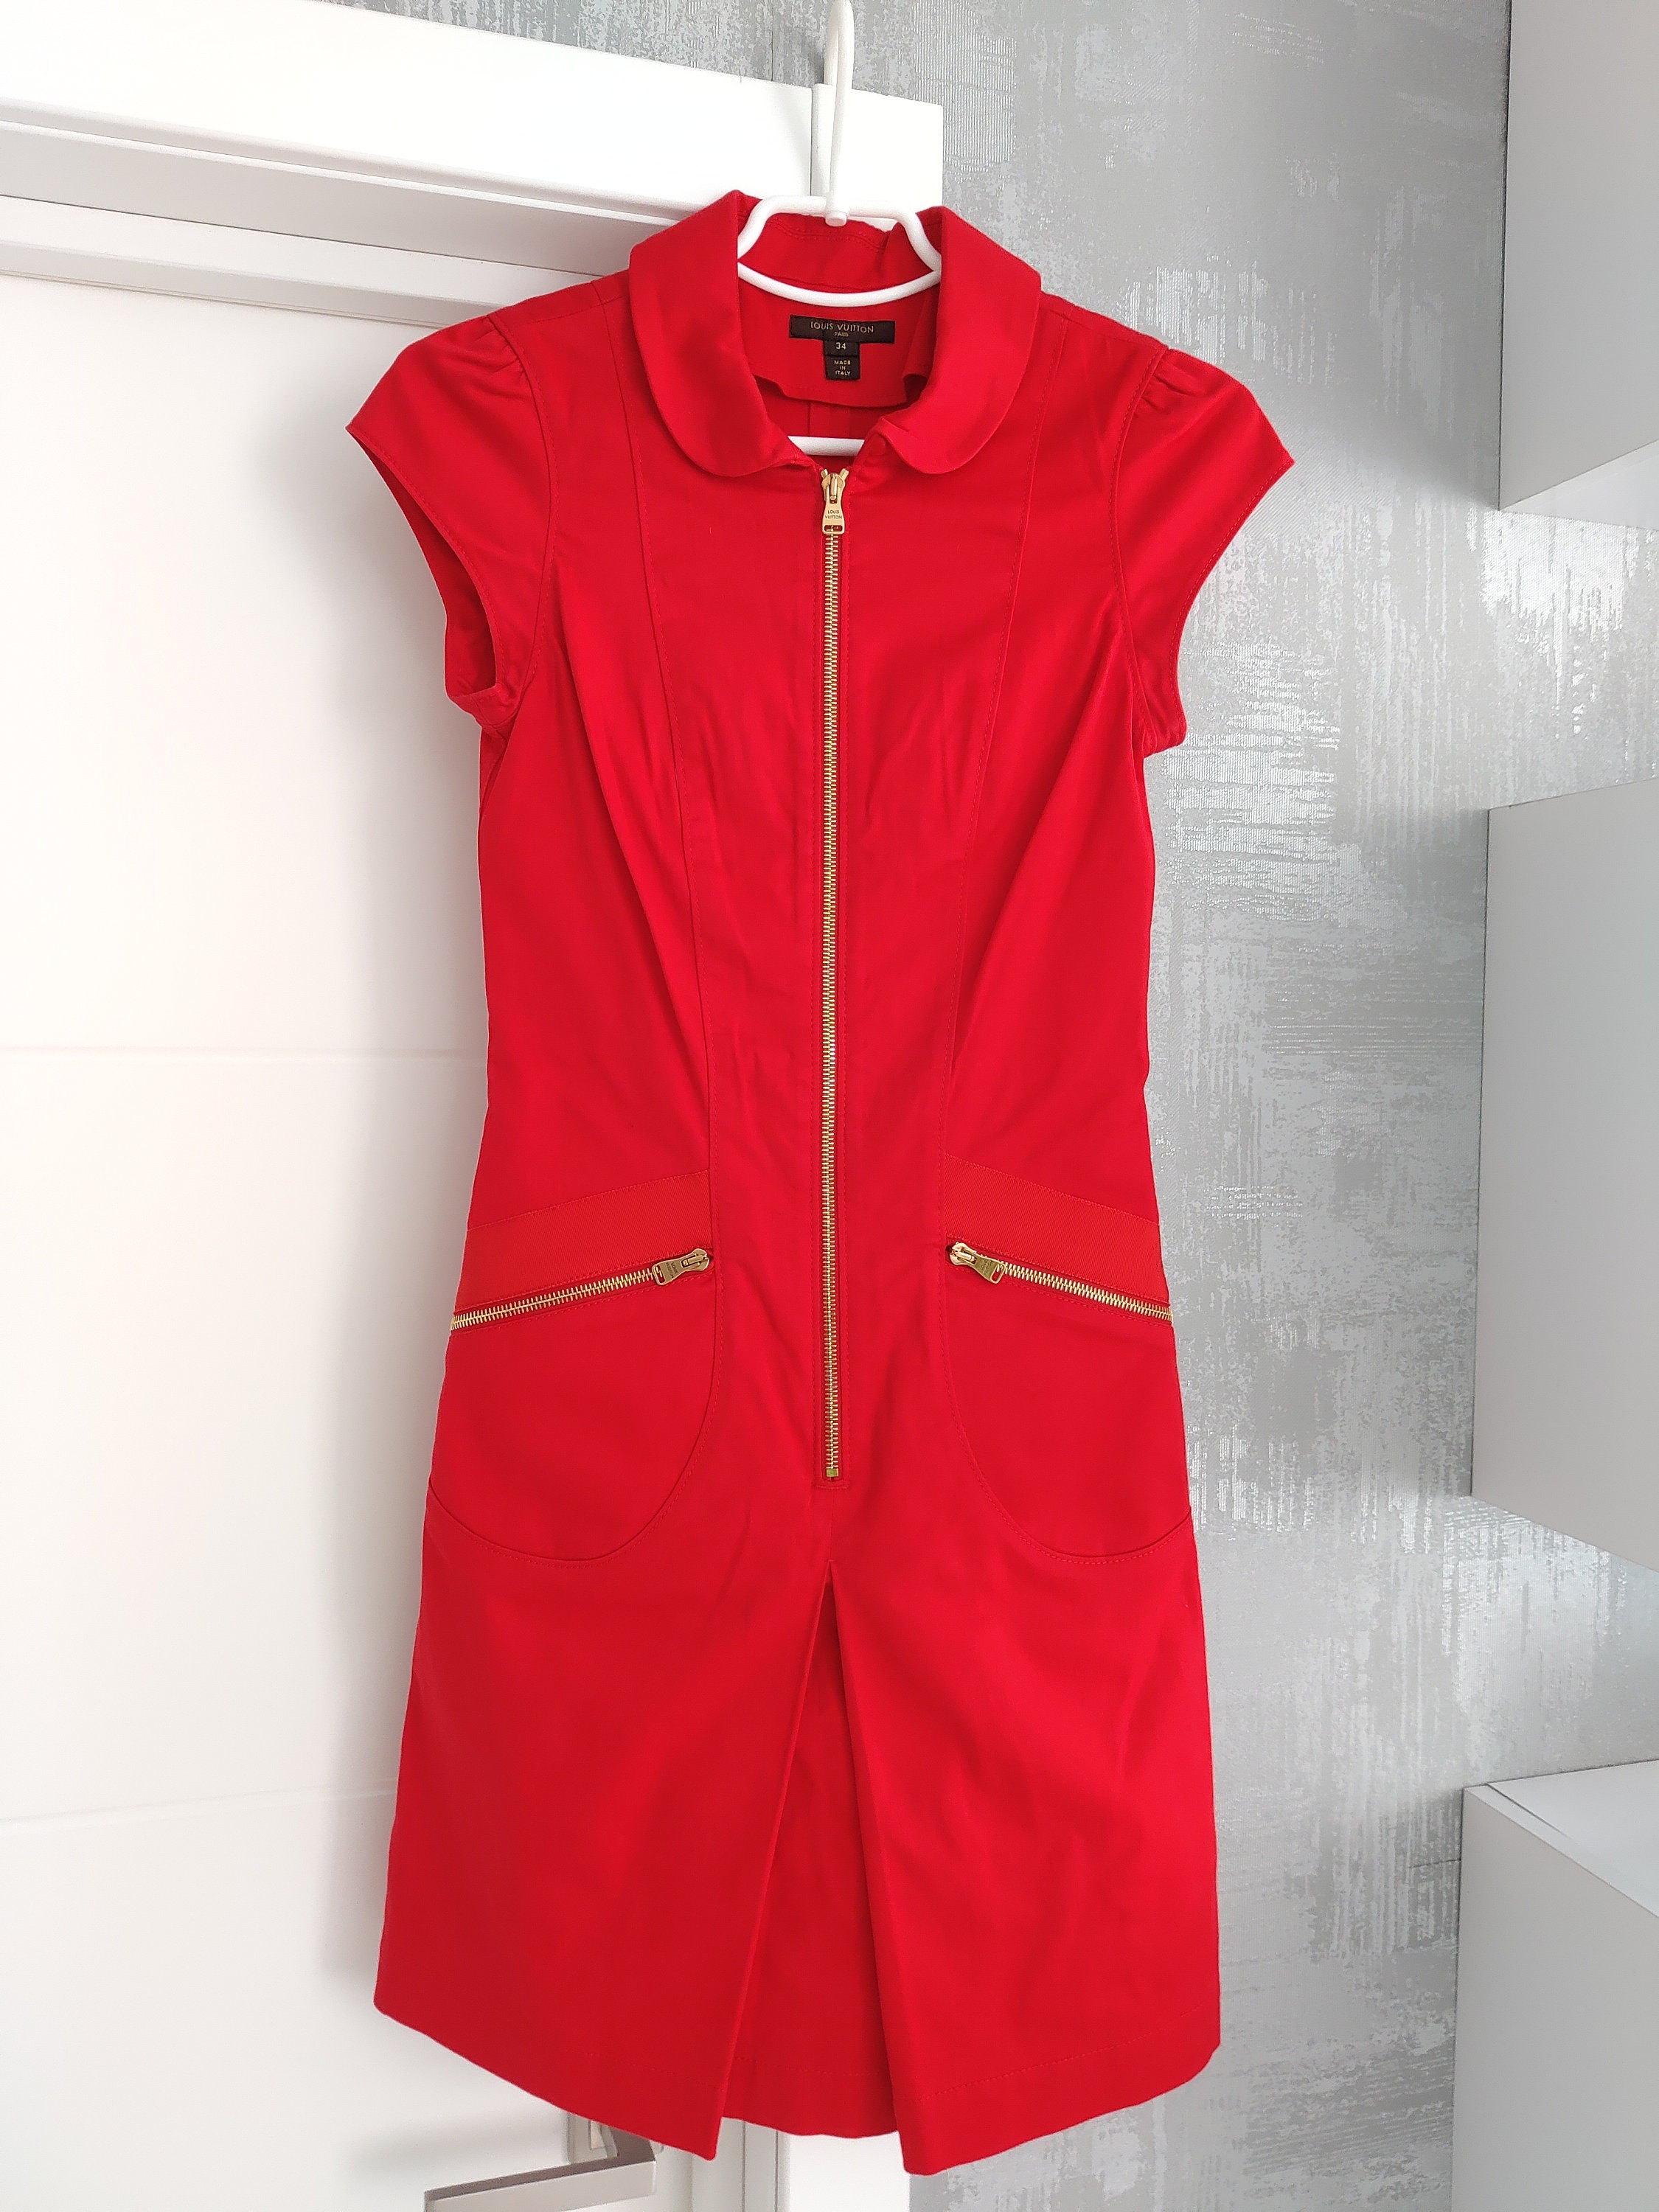 Louis Vuitton Red Dress